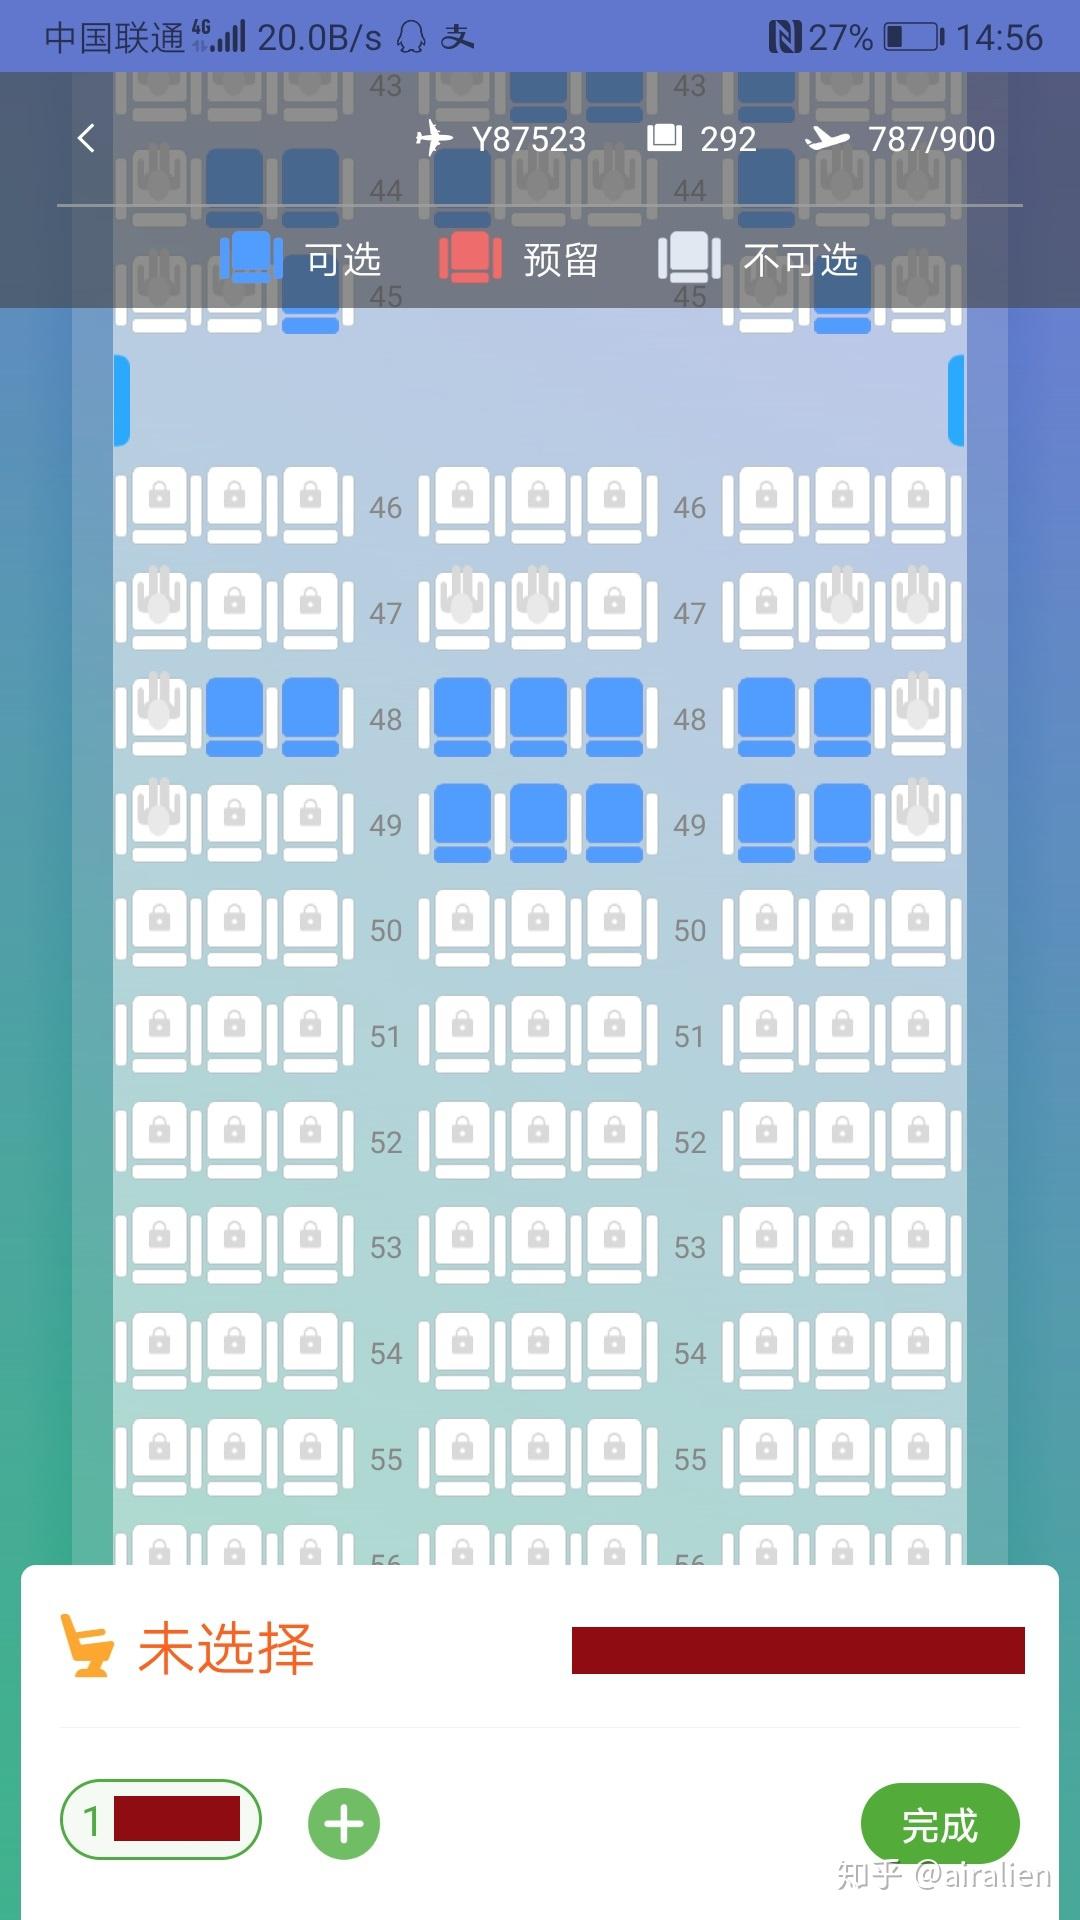 49排及之前的座位都已经没有靠窗了,而50排以后的座位全部是锁定状态